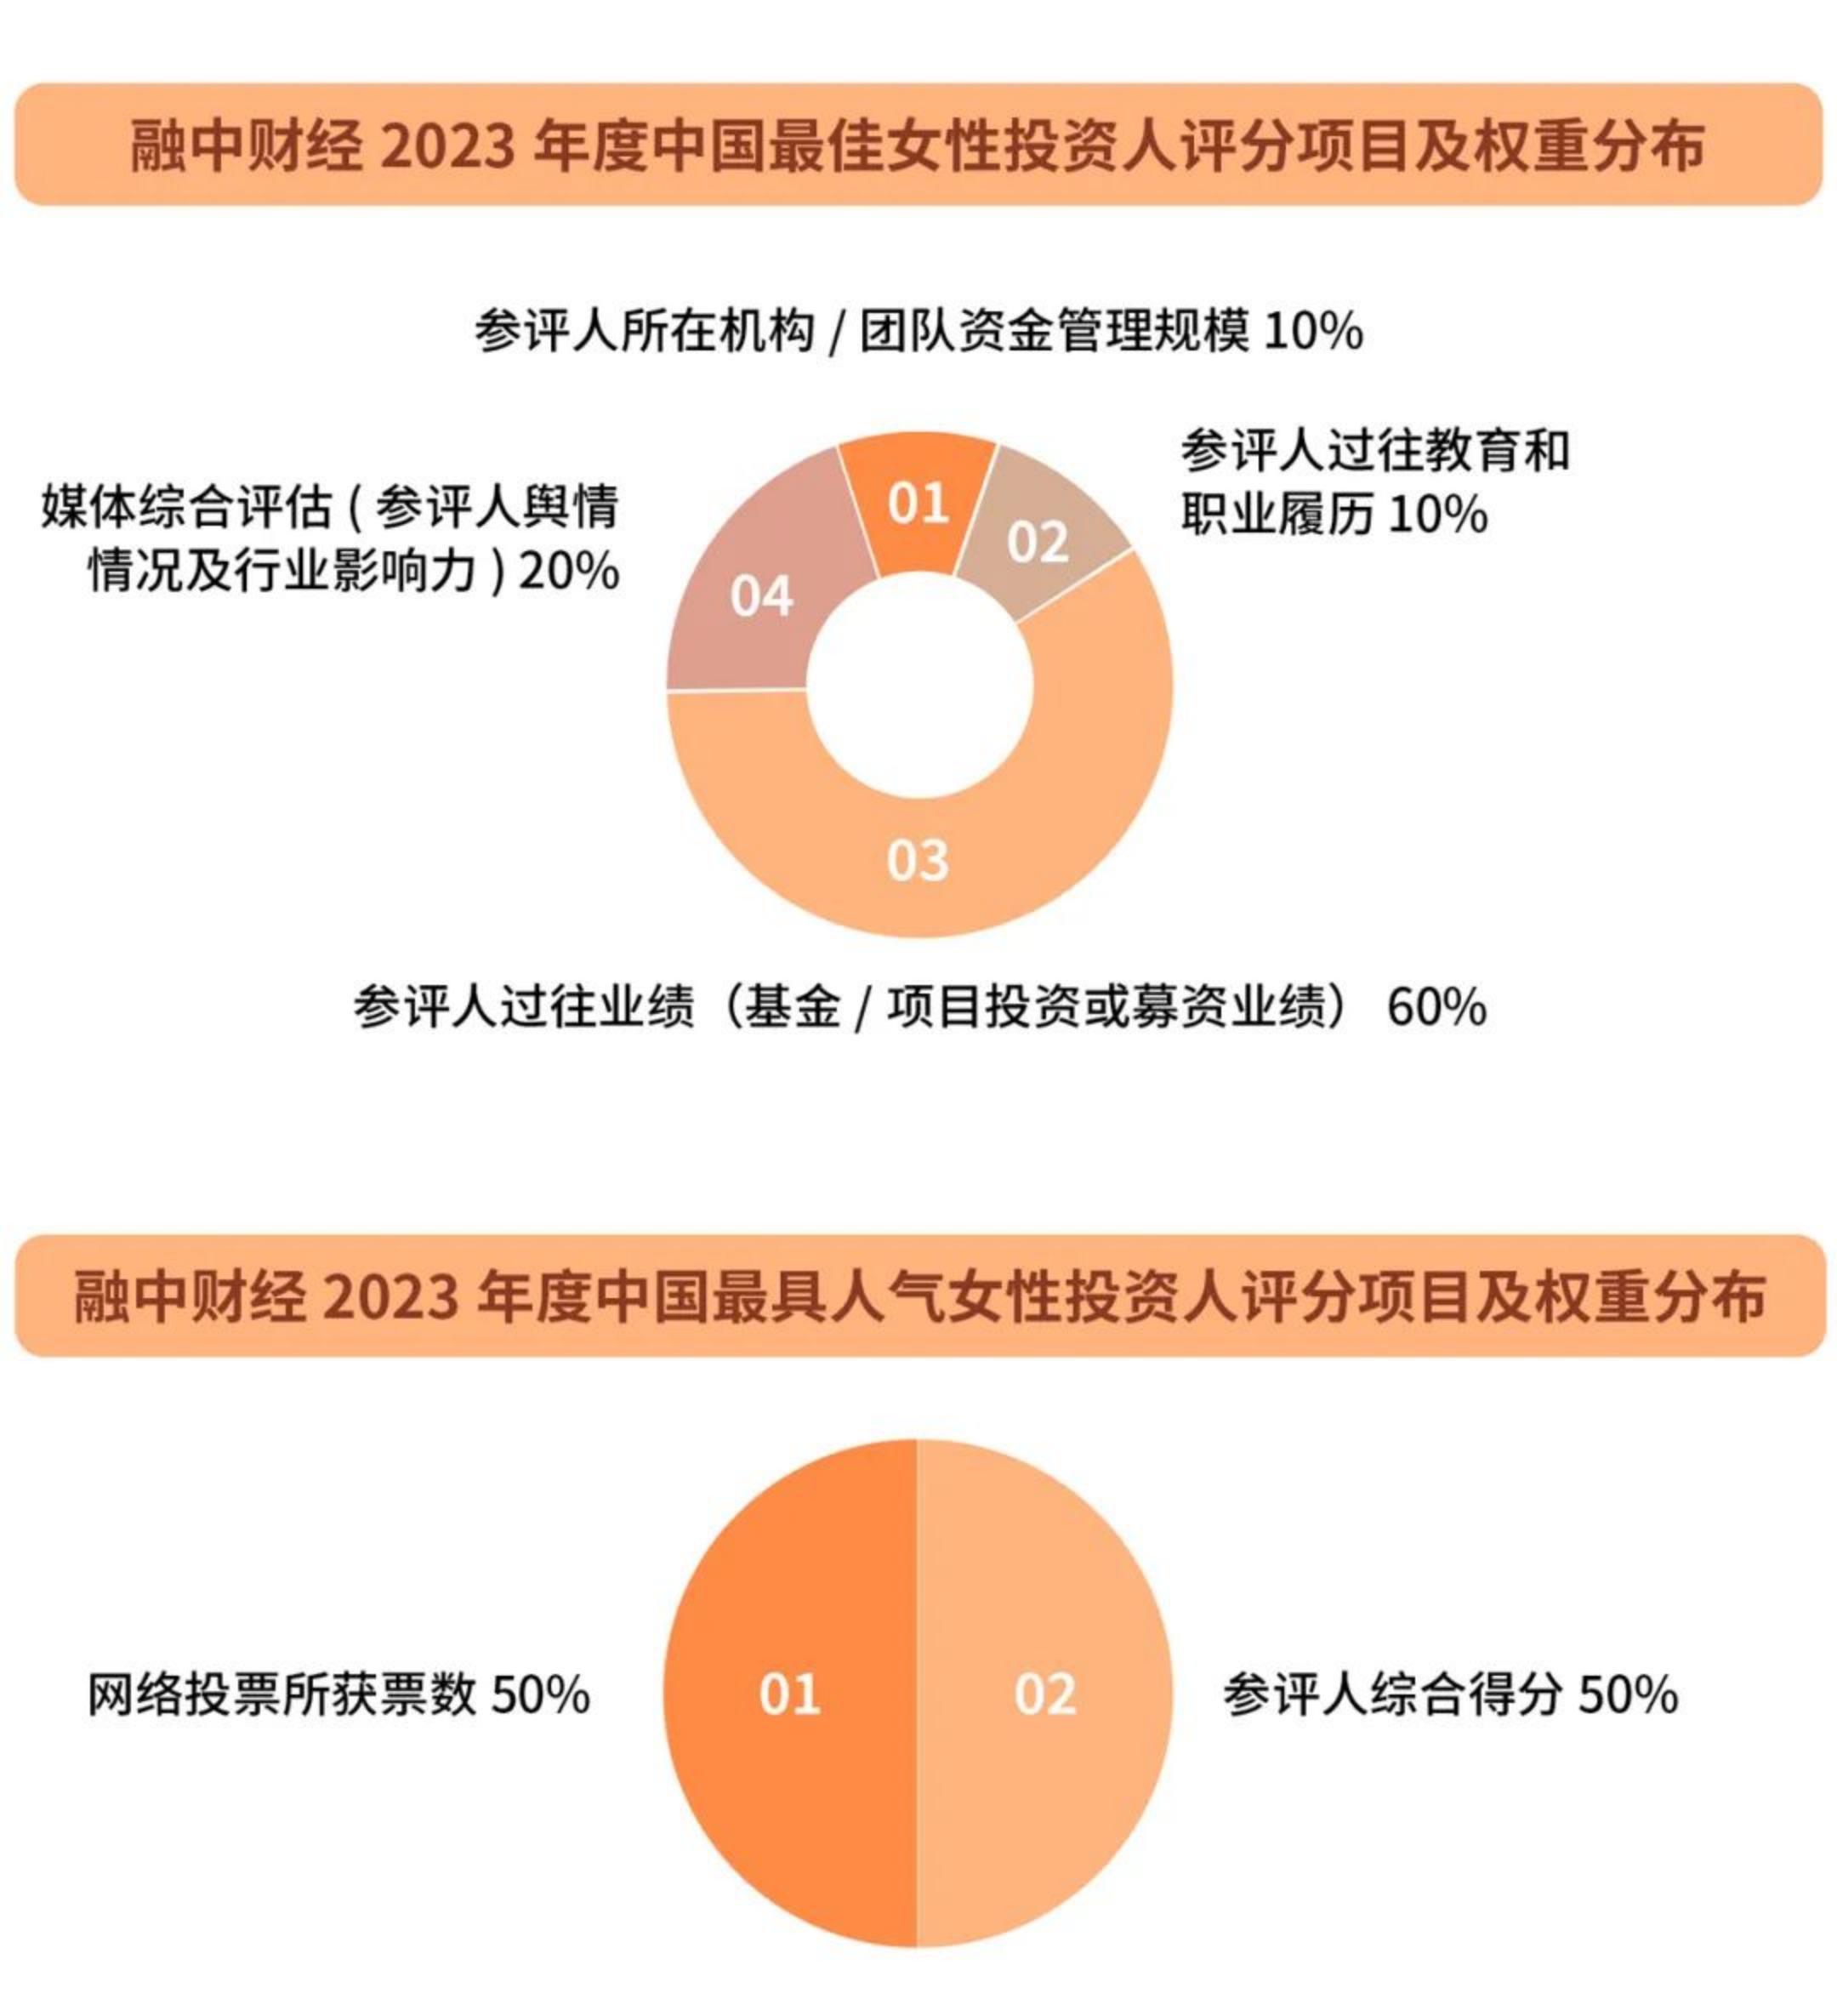 财经:绚丽开启 | 融中财经2023年度中国最佳女性投资人榜单调研问卷征集